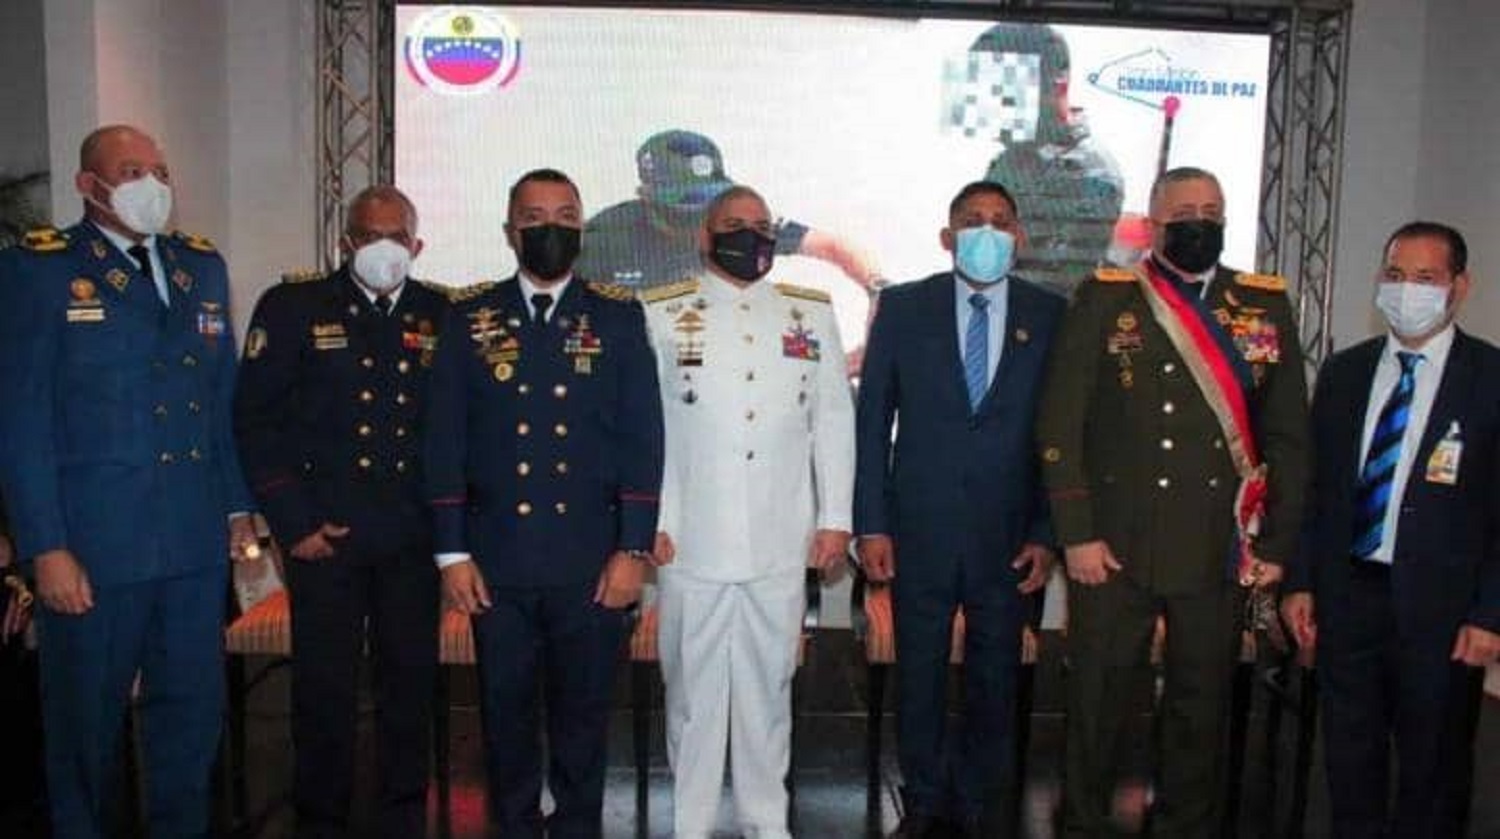 557 oficiales de la Policía Nacional Bolivariana